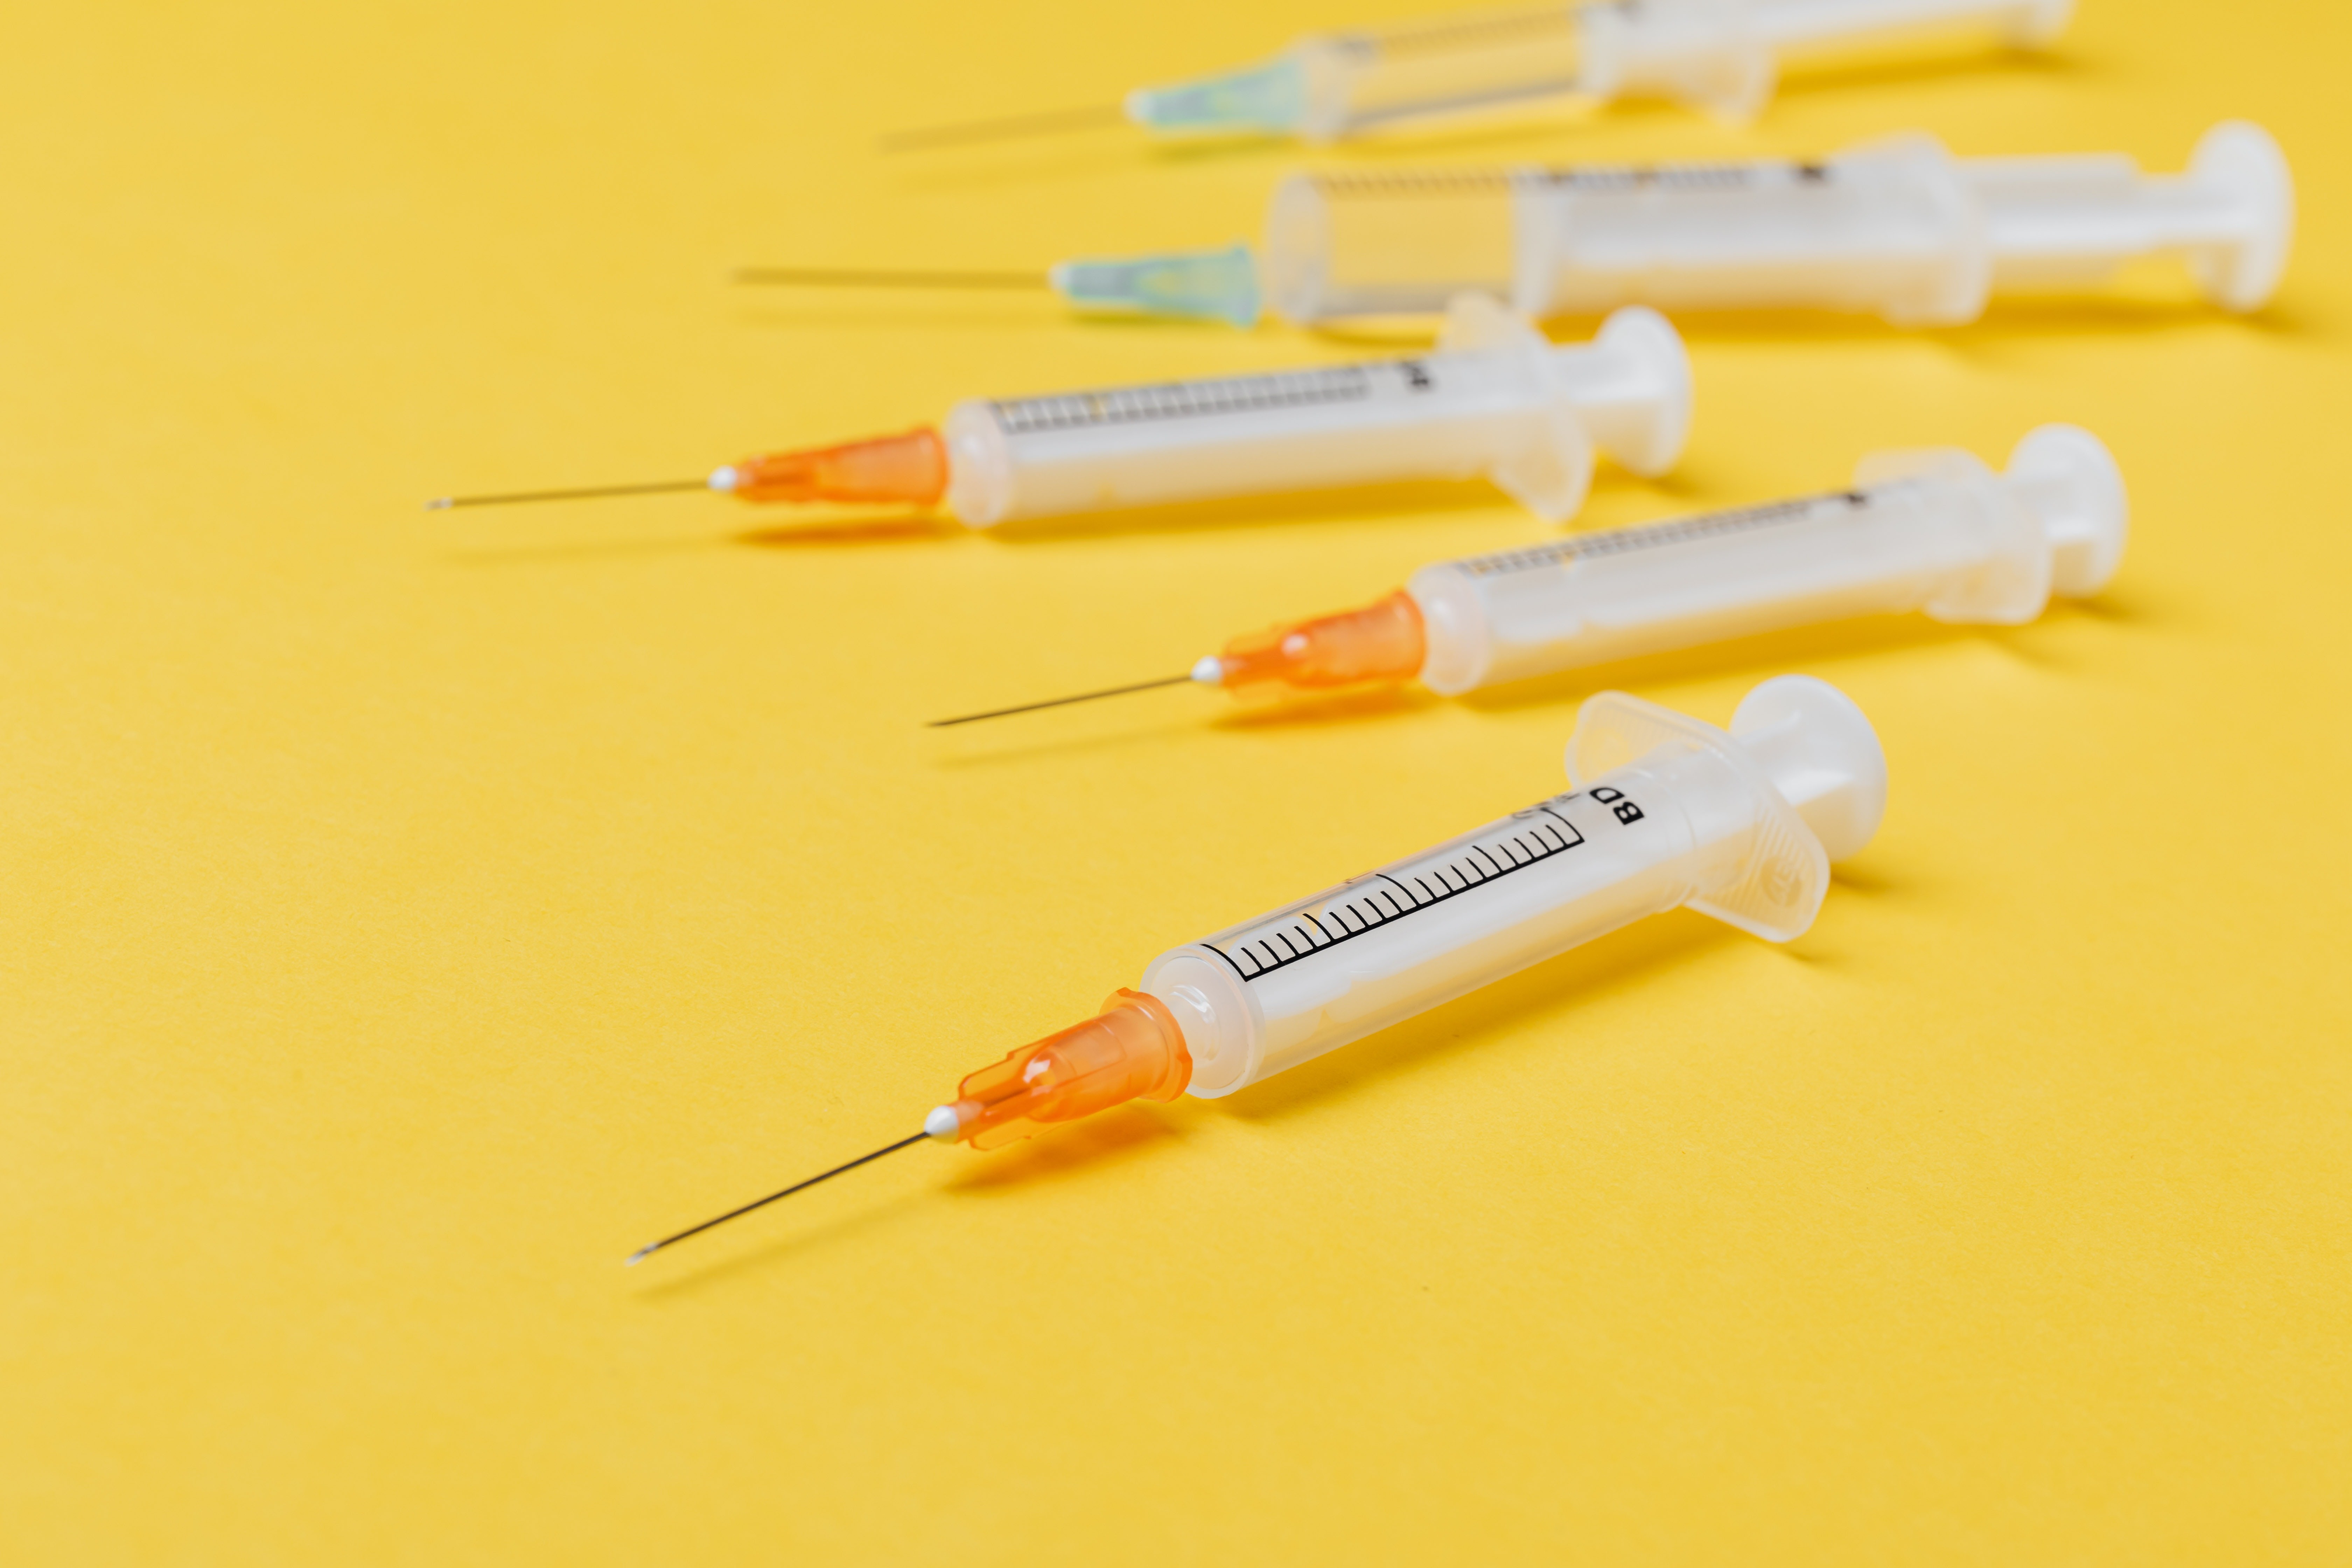 Para os autores do estudo, estados com as maiores taxas de infecção pela Covid-19 deveriam ser priorizados na distribuição de doses das vacinas (Foto: Karolina Grabowska/Pexels)